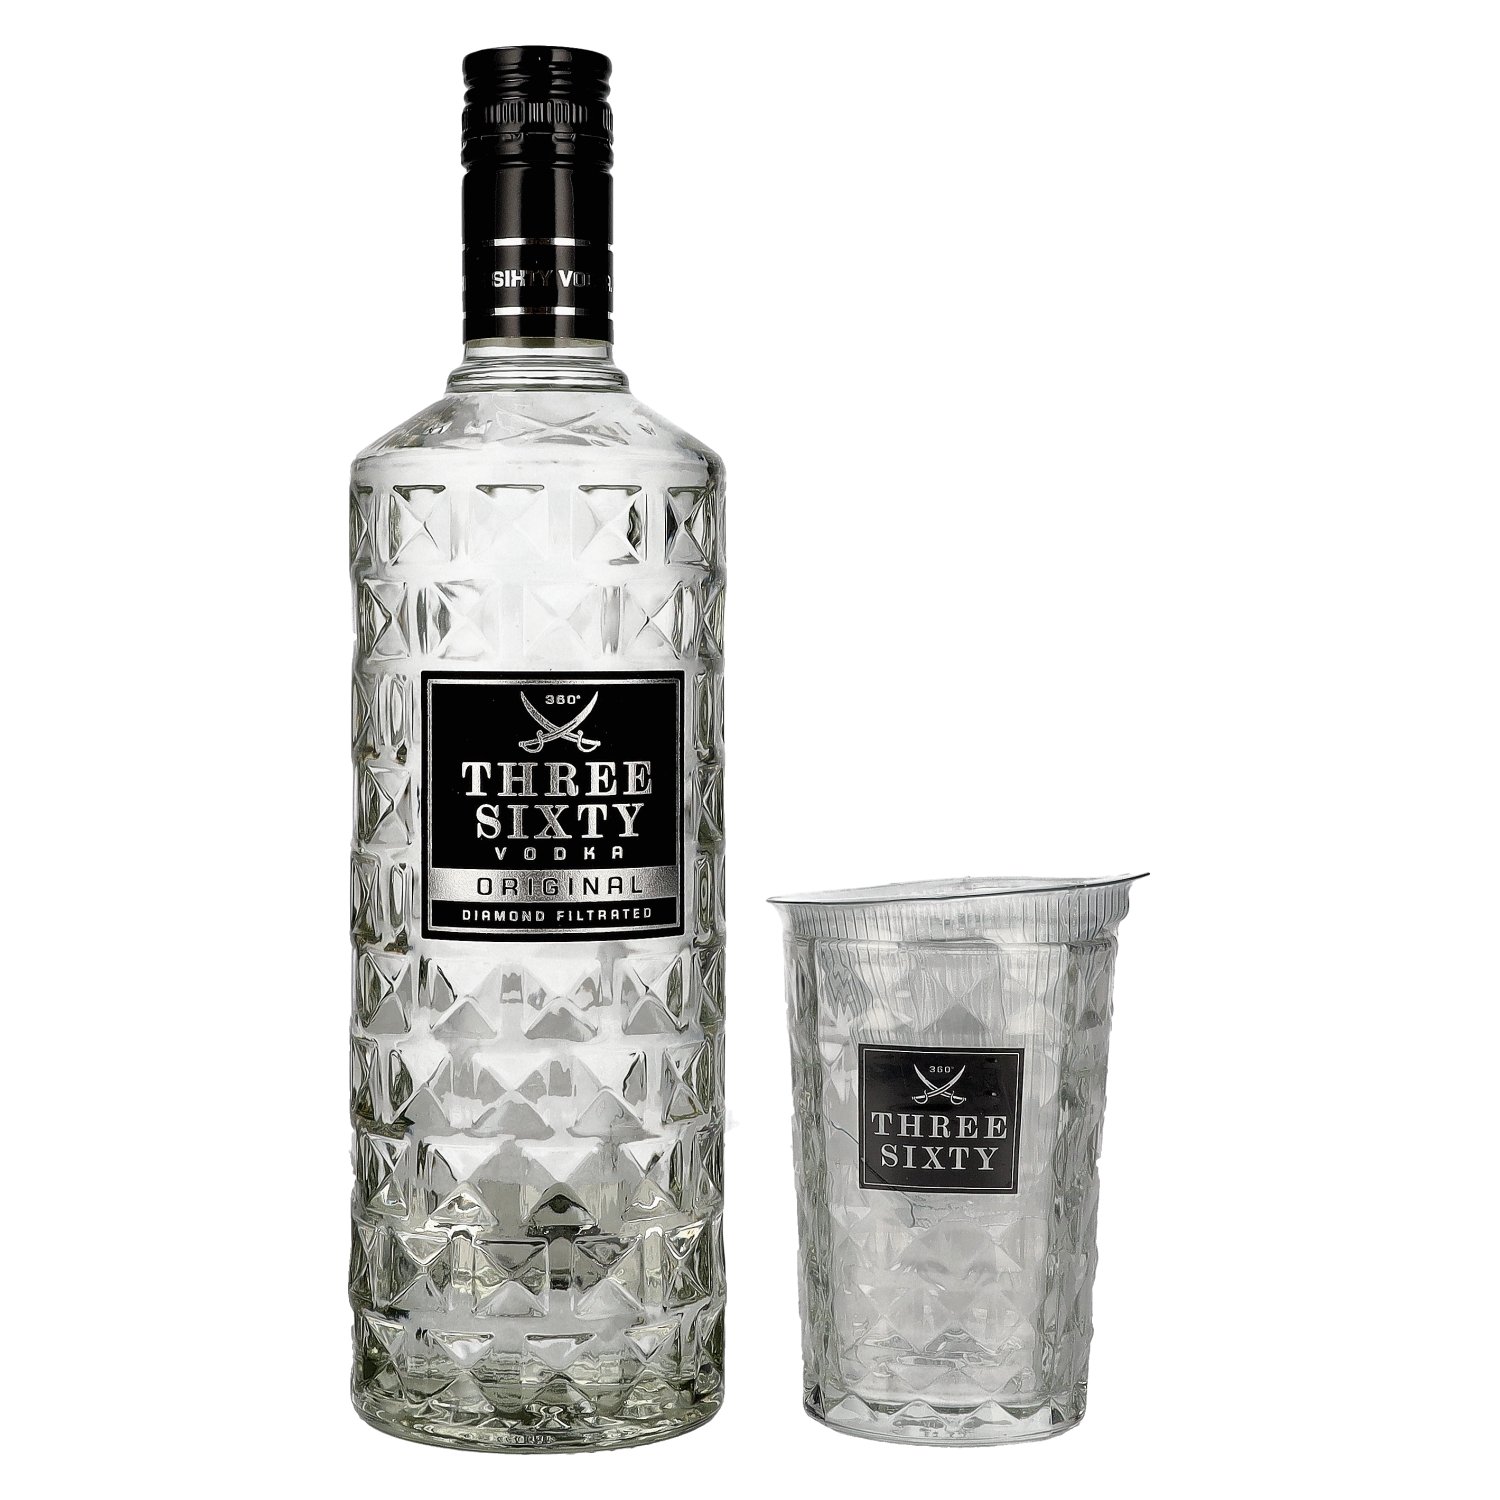 Three Sixty Vodka 37,5% Vol. 0,7l with glass